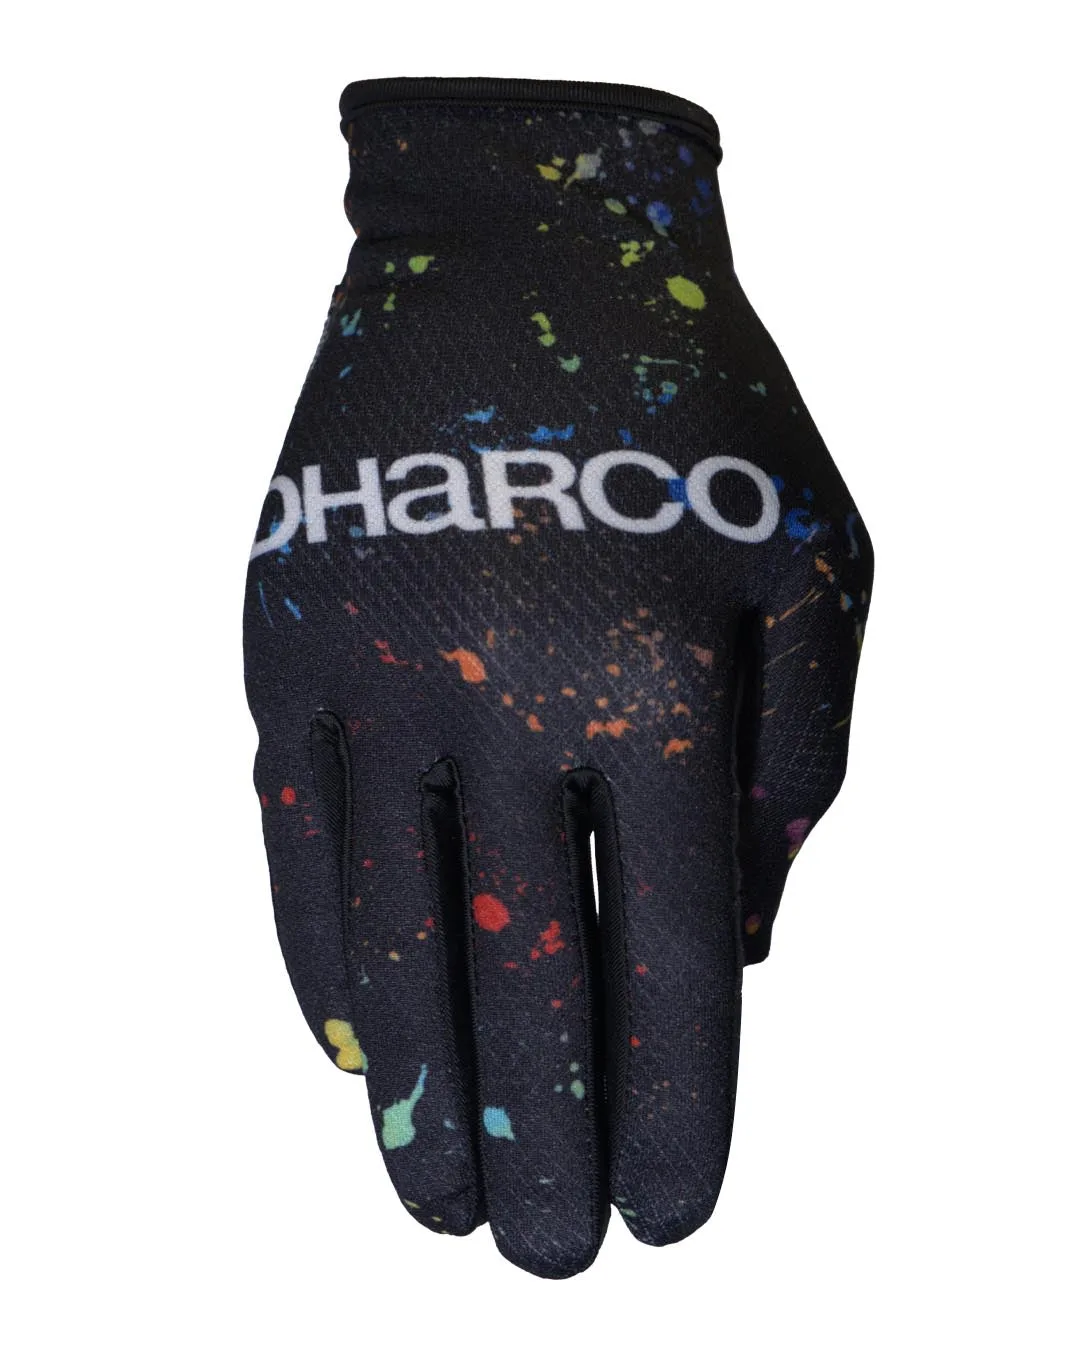 Billede af Dharco - Mens Race Glove - Supernova - Sort,Grøn,Blå,Rød,Orange XL